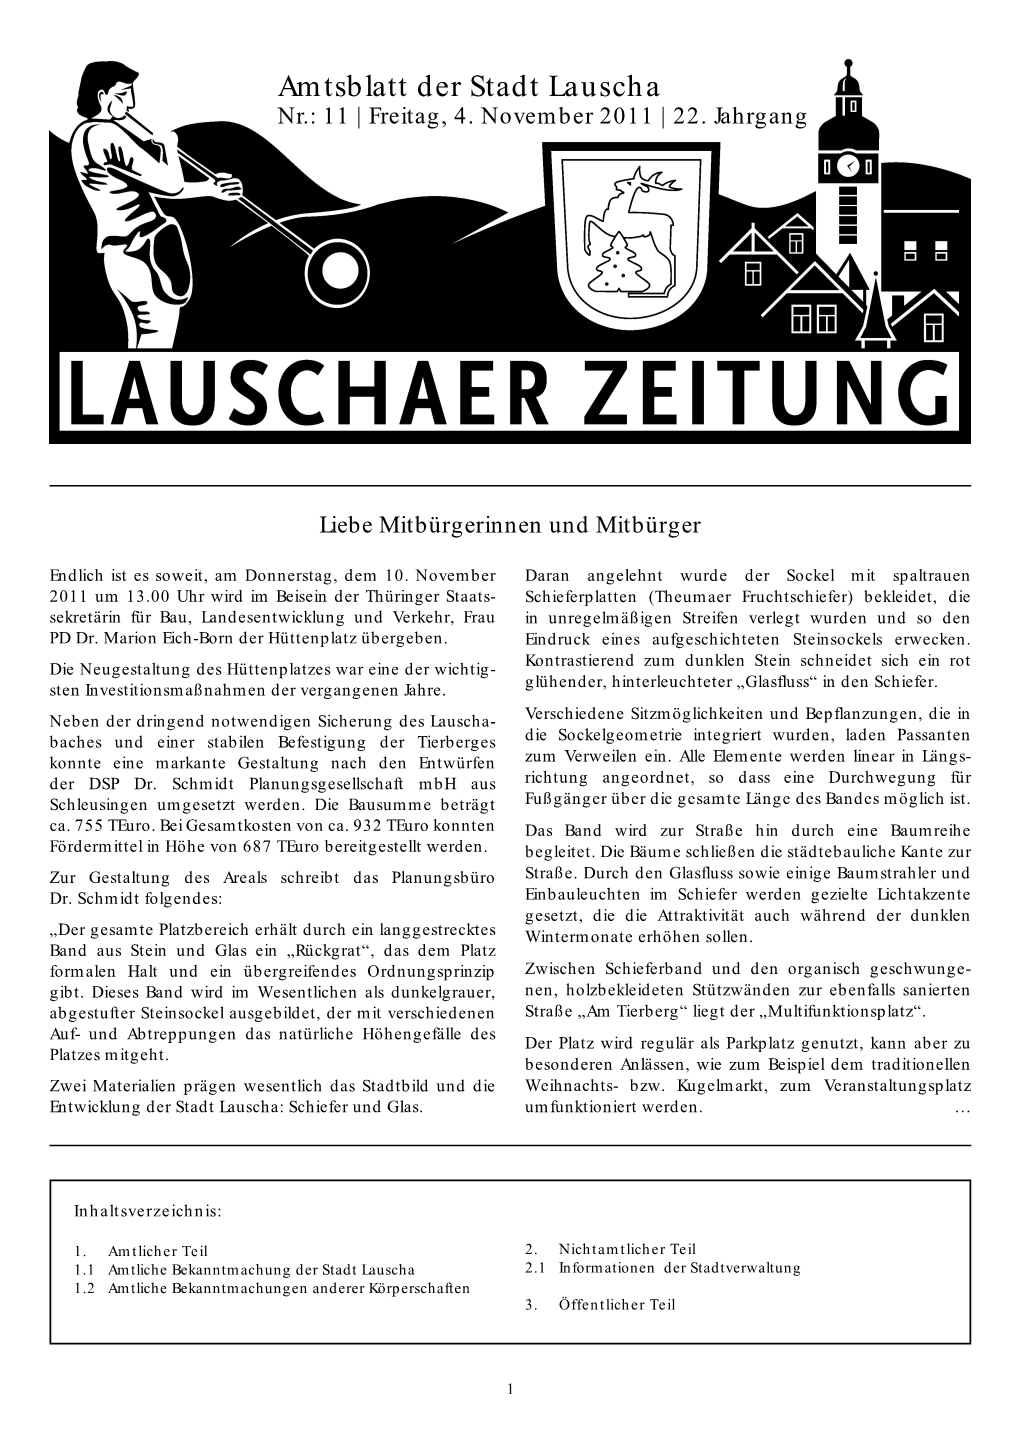 Lauschaer Zeitung Die Köppleinkirmes 2011 Startete Wie Jedes Jahr Mit Dem Kinderfest Am Sonntag